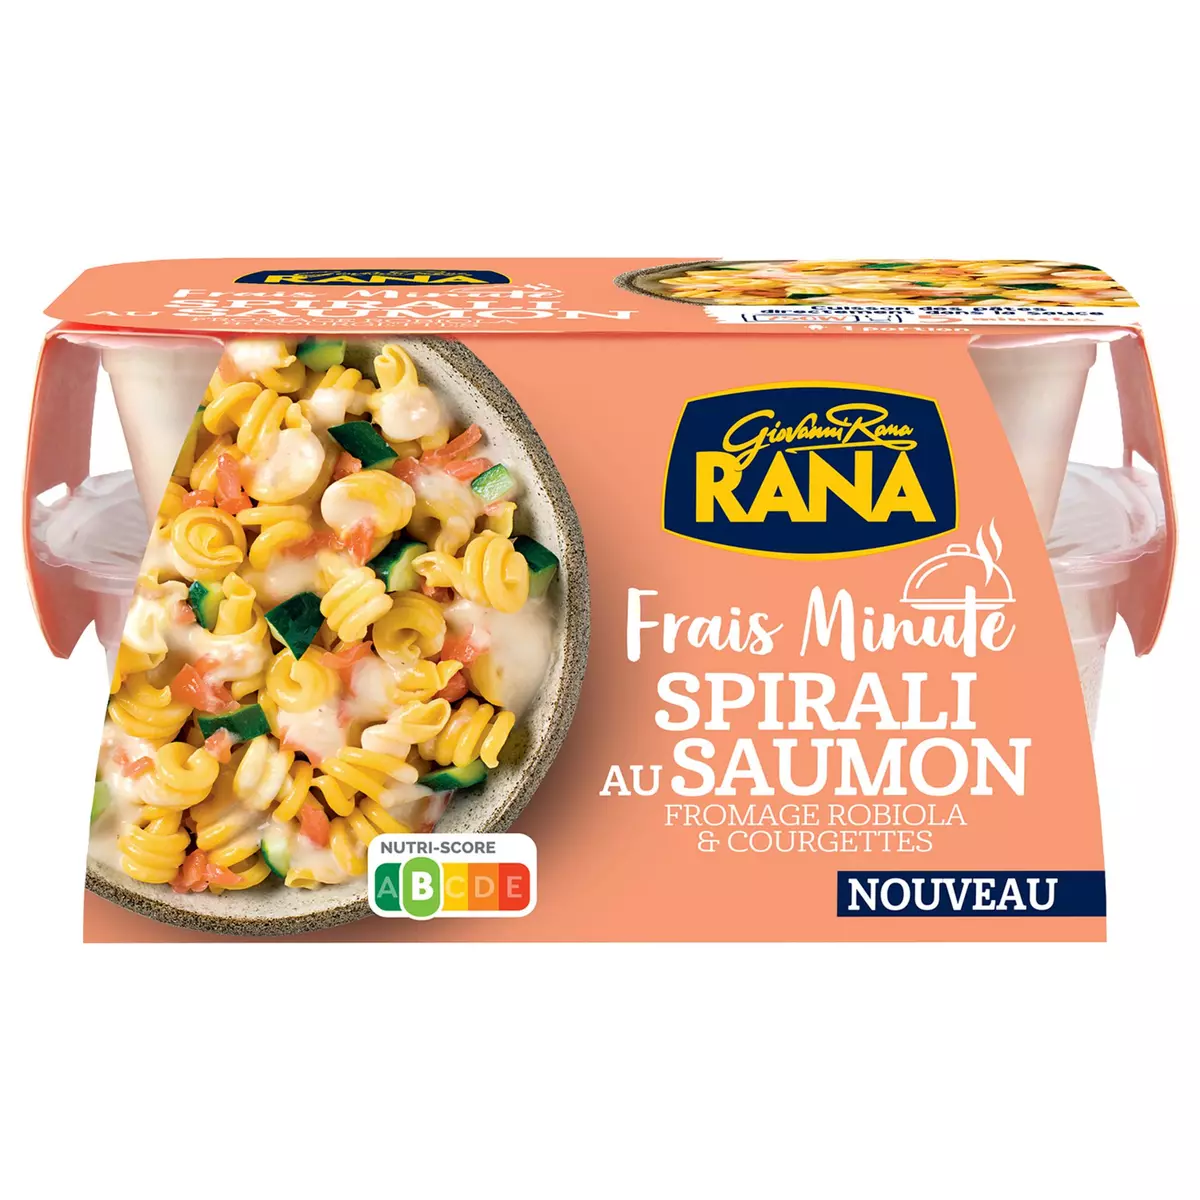 RANA Frais Minute Spirali au saumon fromage robiola et courgettes 1 portion 350g